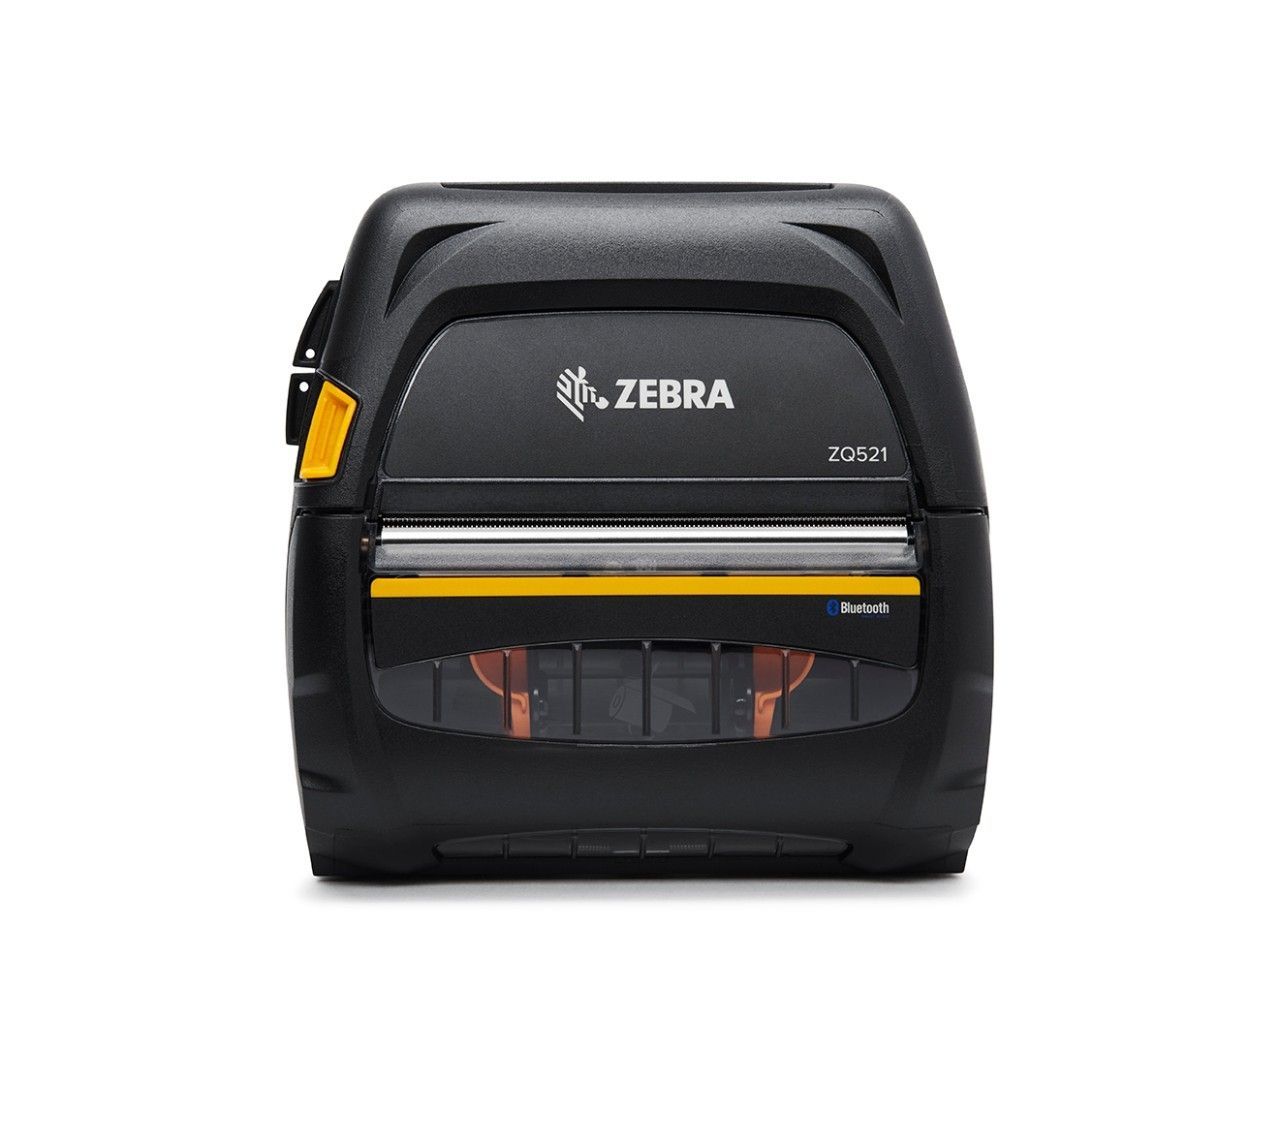 Uma impressora portátil zebra zq510 é mostrada em um fundo branco.